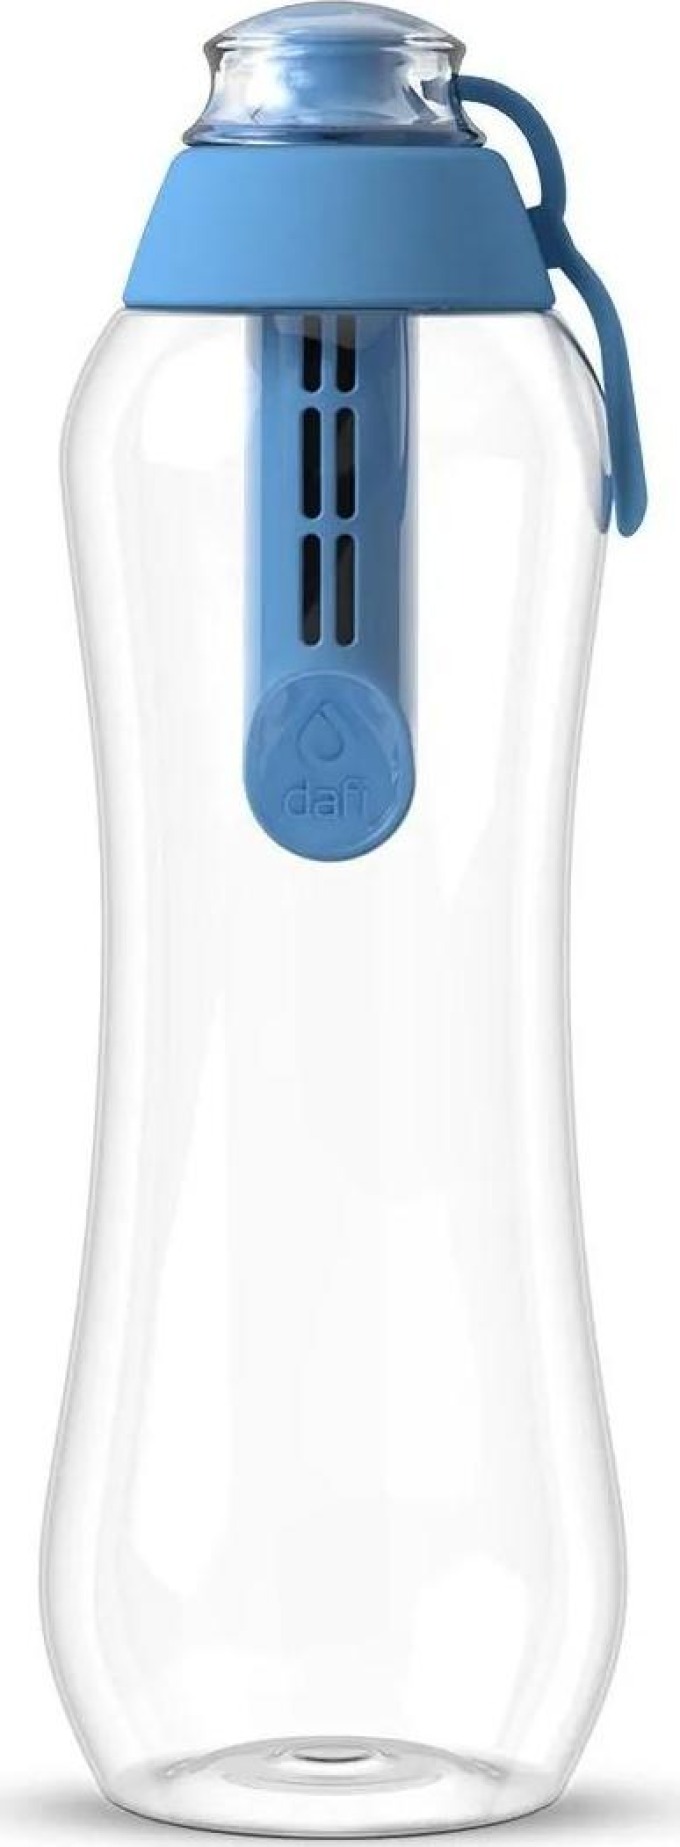 Filtrační láhev Dafi SOFT 0,5 l (modrá)